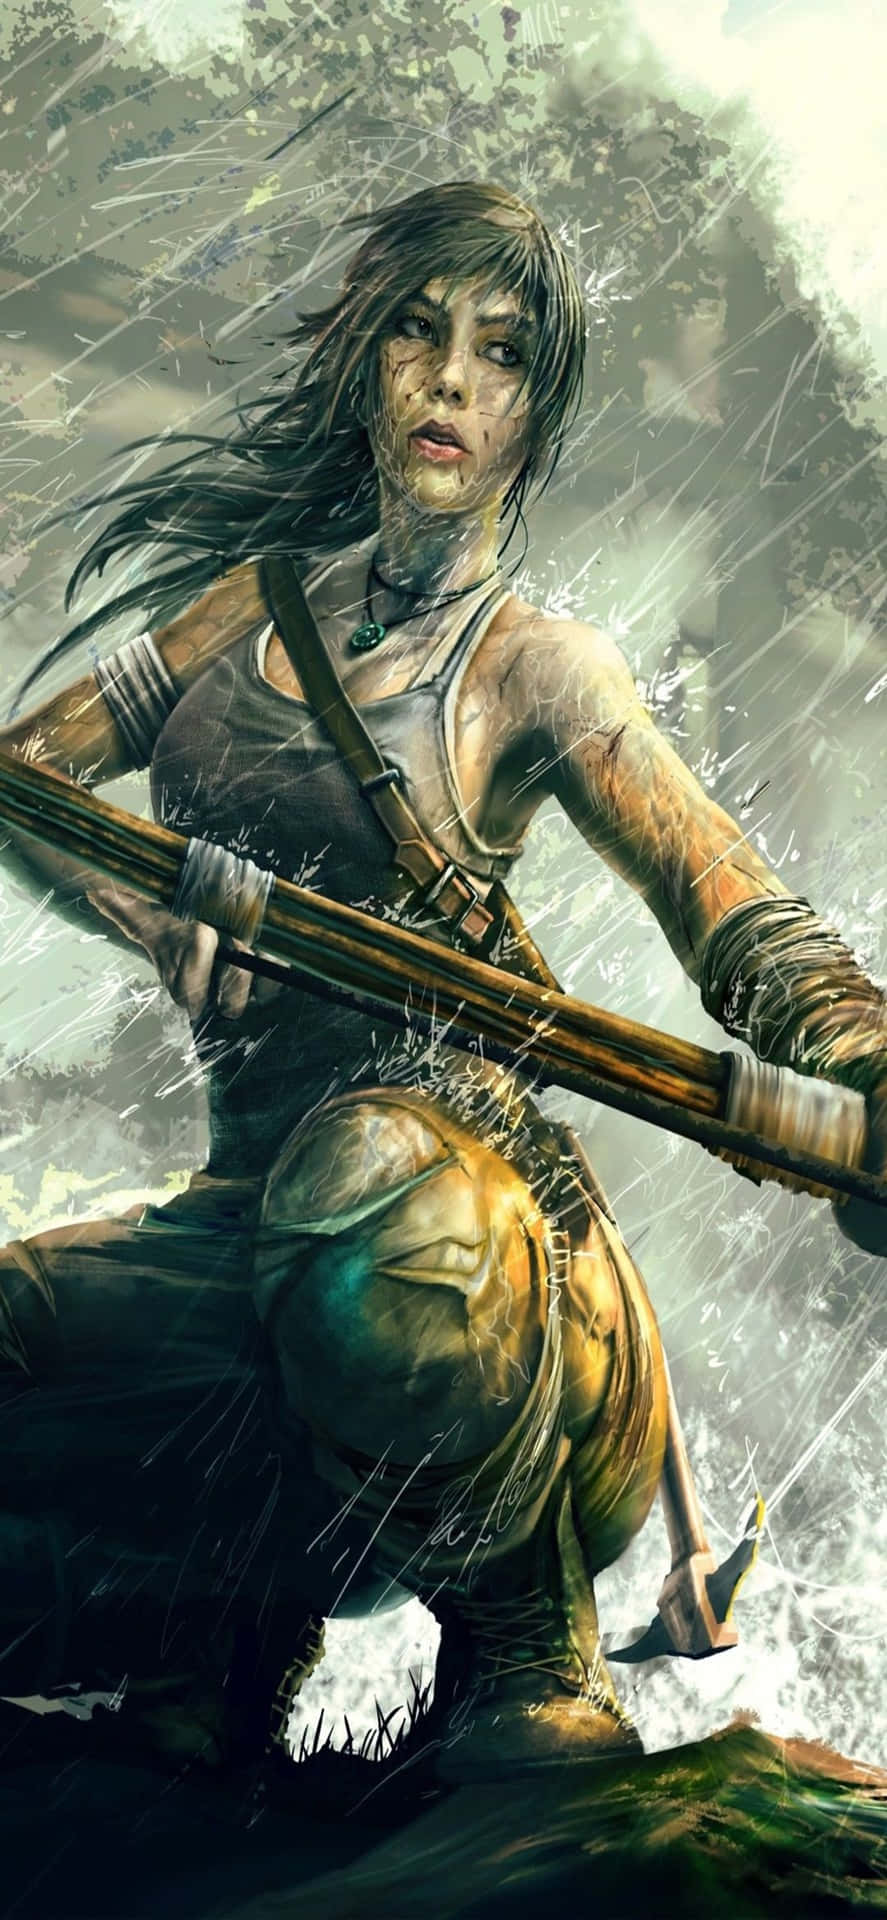 Descubrelos Misterios De La Emocionante Aventura De Lara Croft.